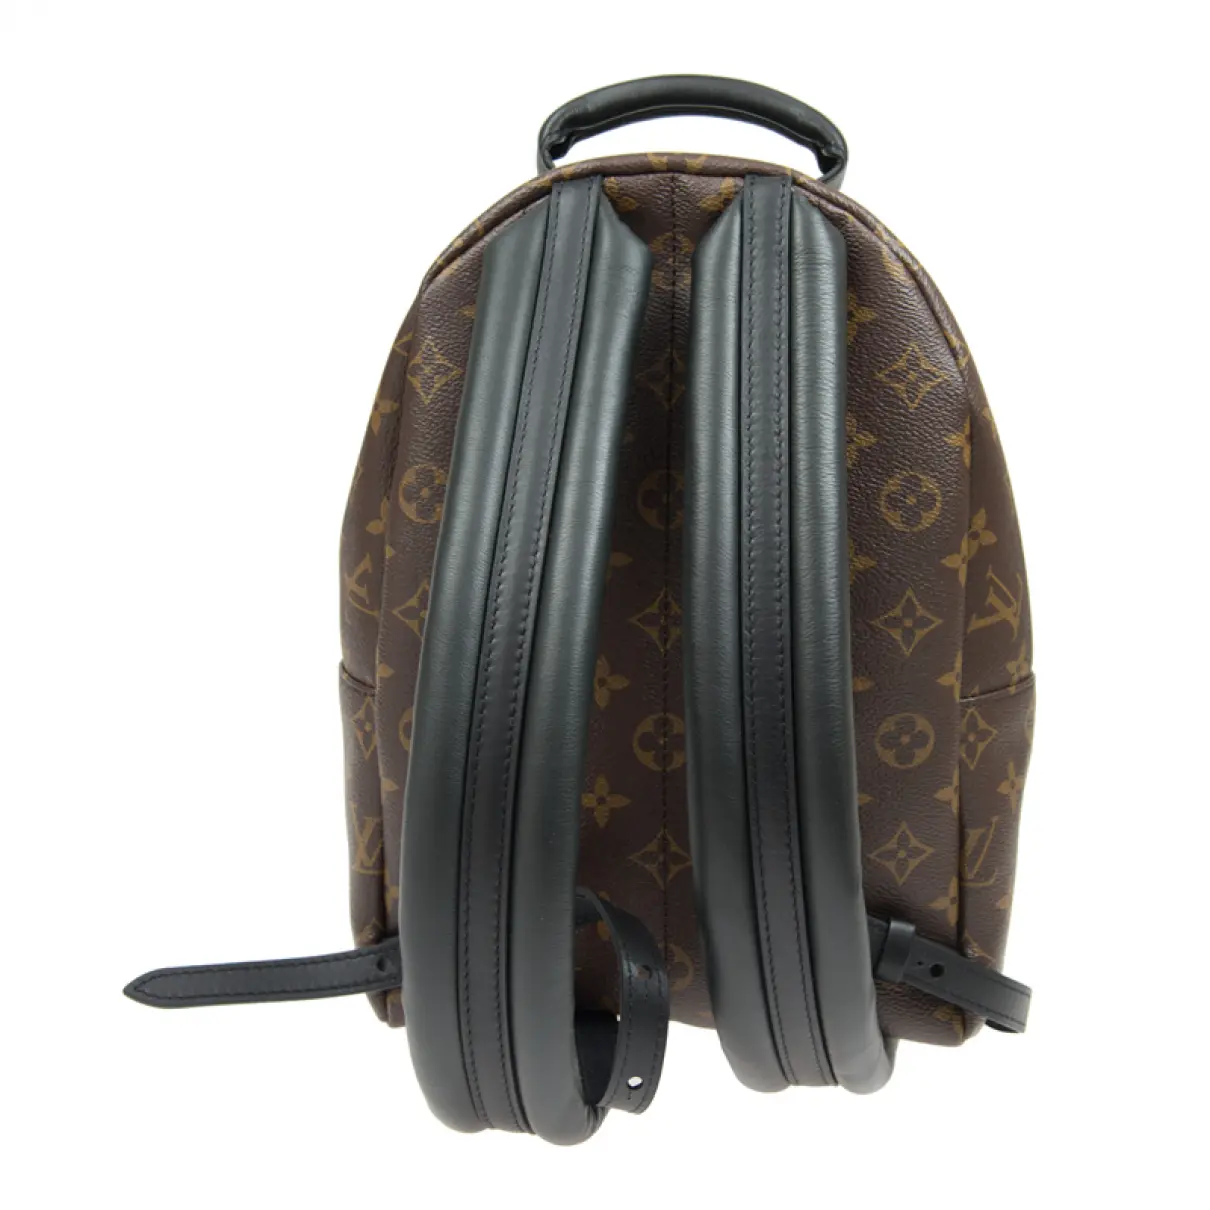 Luxury Louis Vuitton Backpacks Women